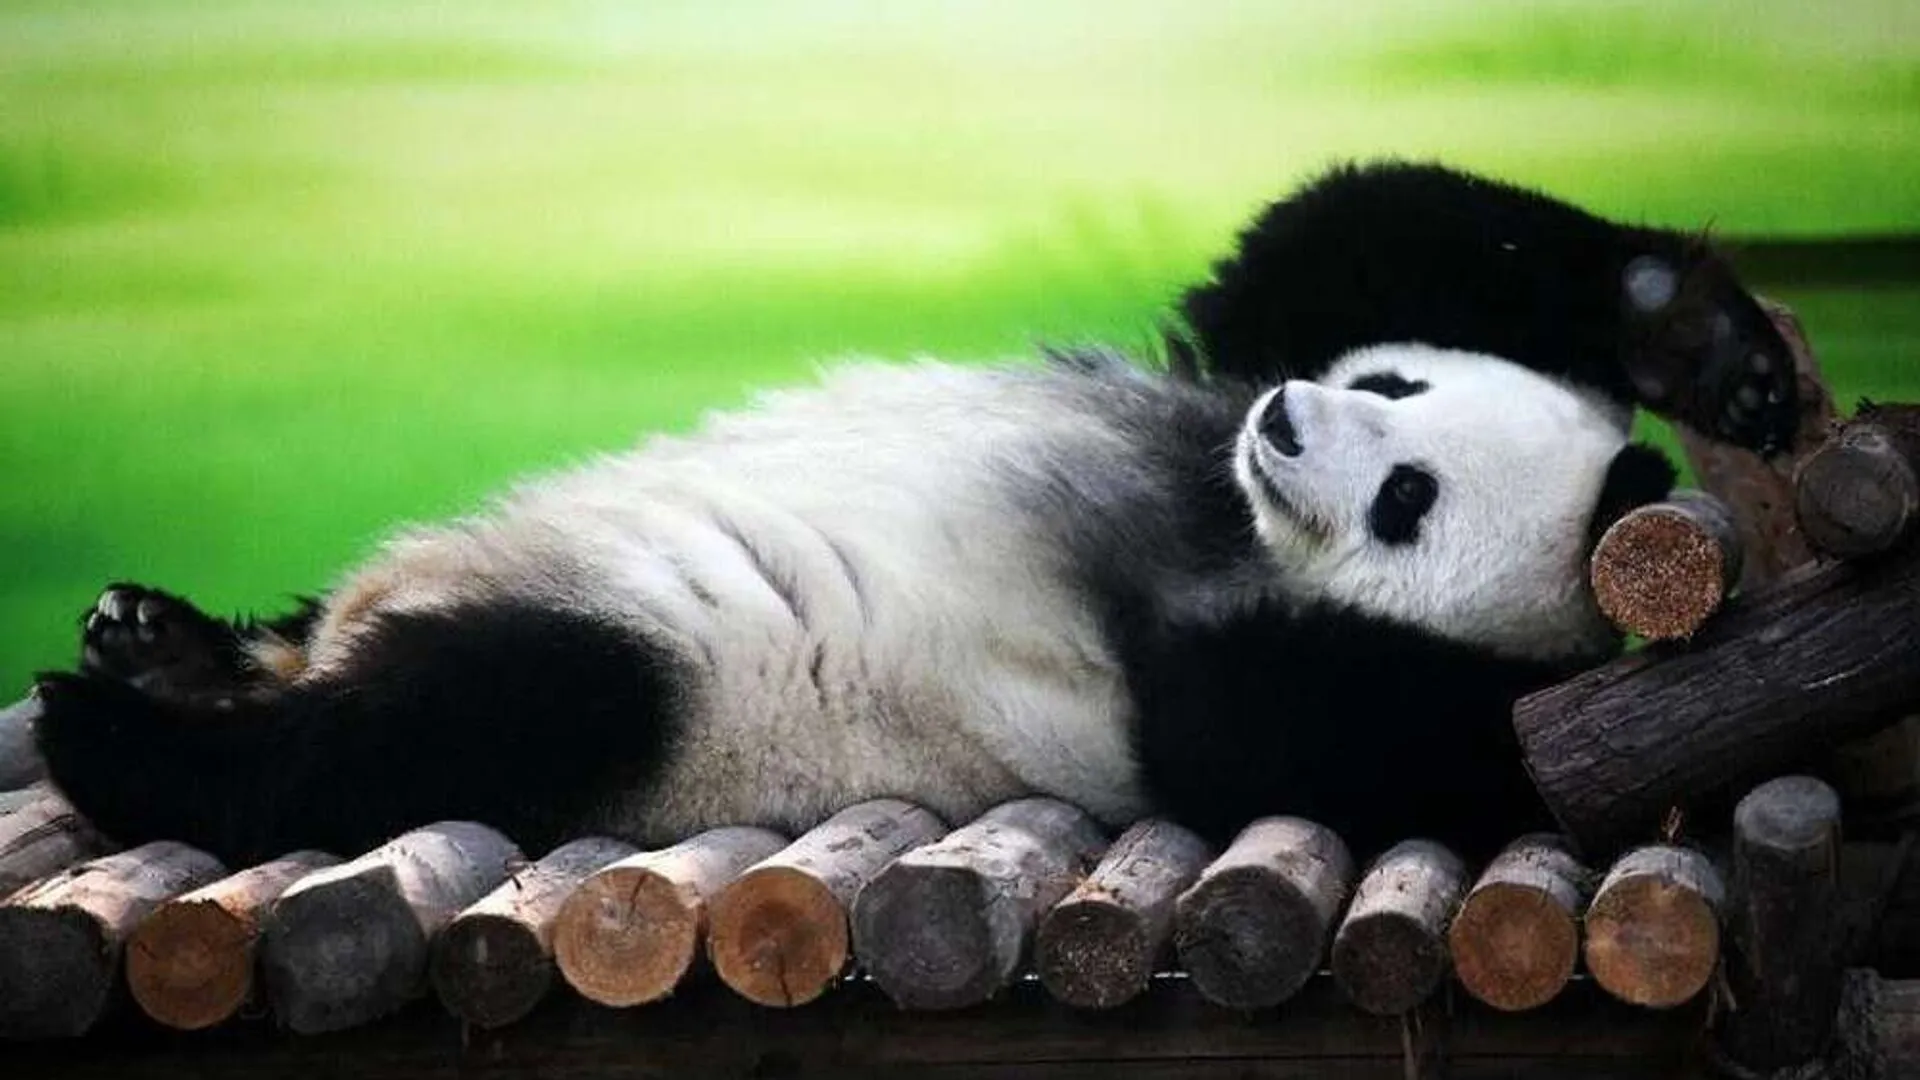 Фото ленивой панды